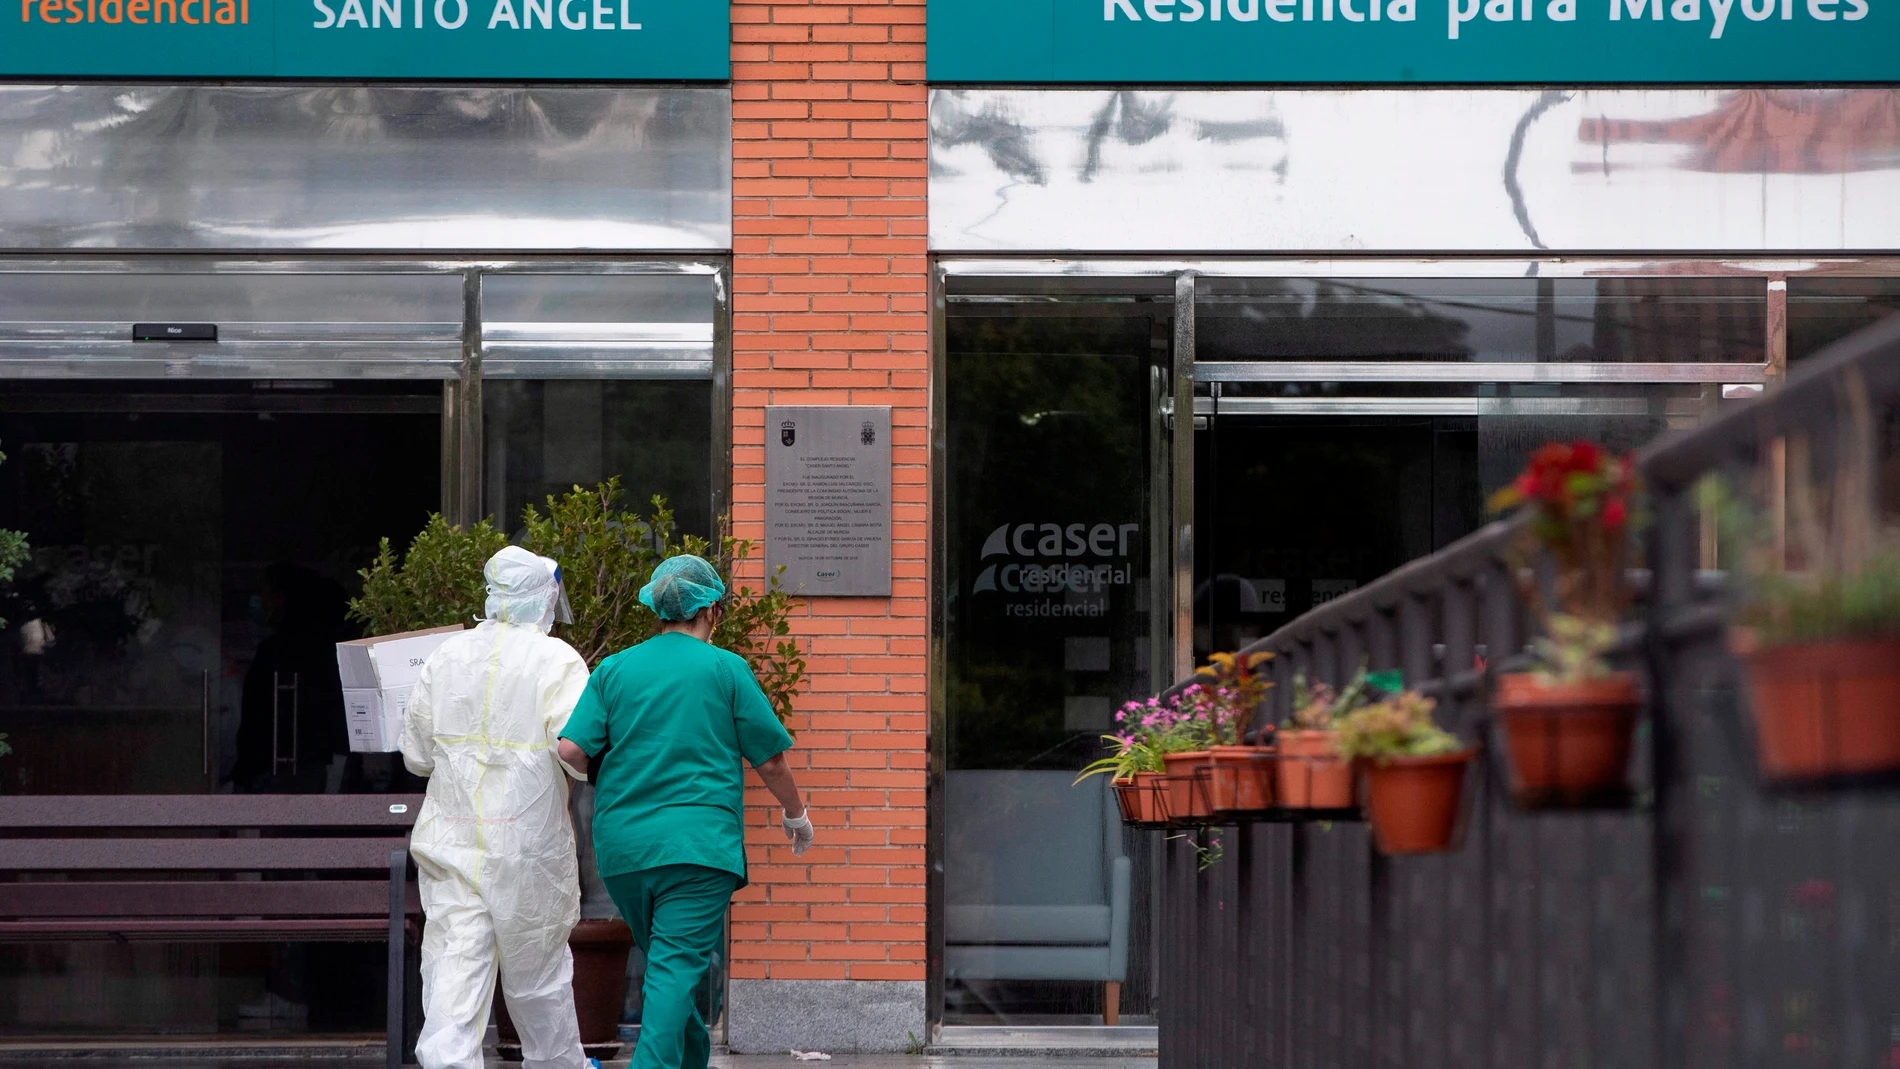 Un equipo médico del servicio murciano de salud a su llegada a la residencia de mayores Caser, de Santo Ángel en Murcia